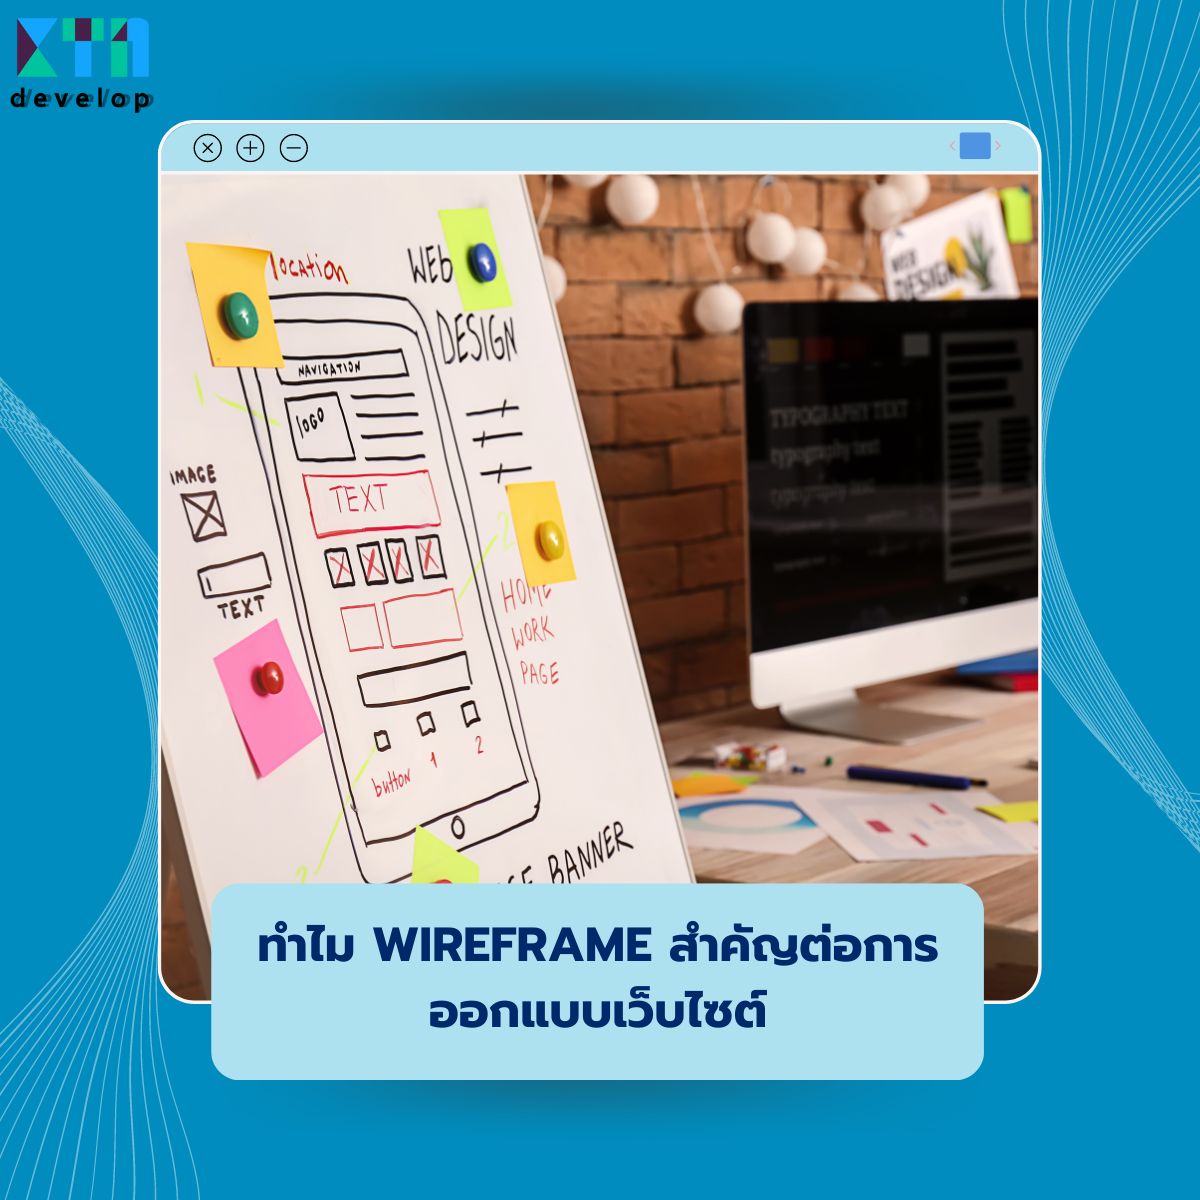 ทำไม Wireframe สำคัญต่อการออกแบบเว็บไซต์